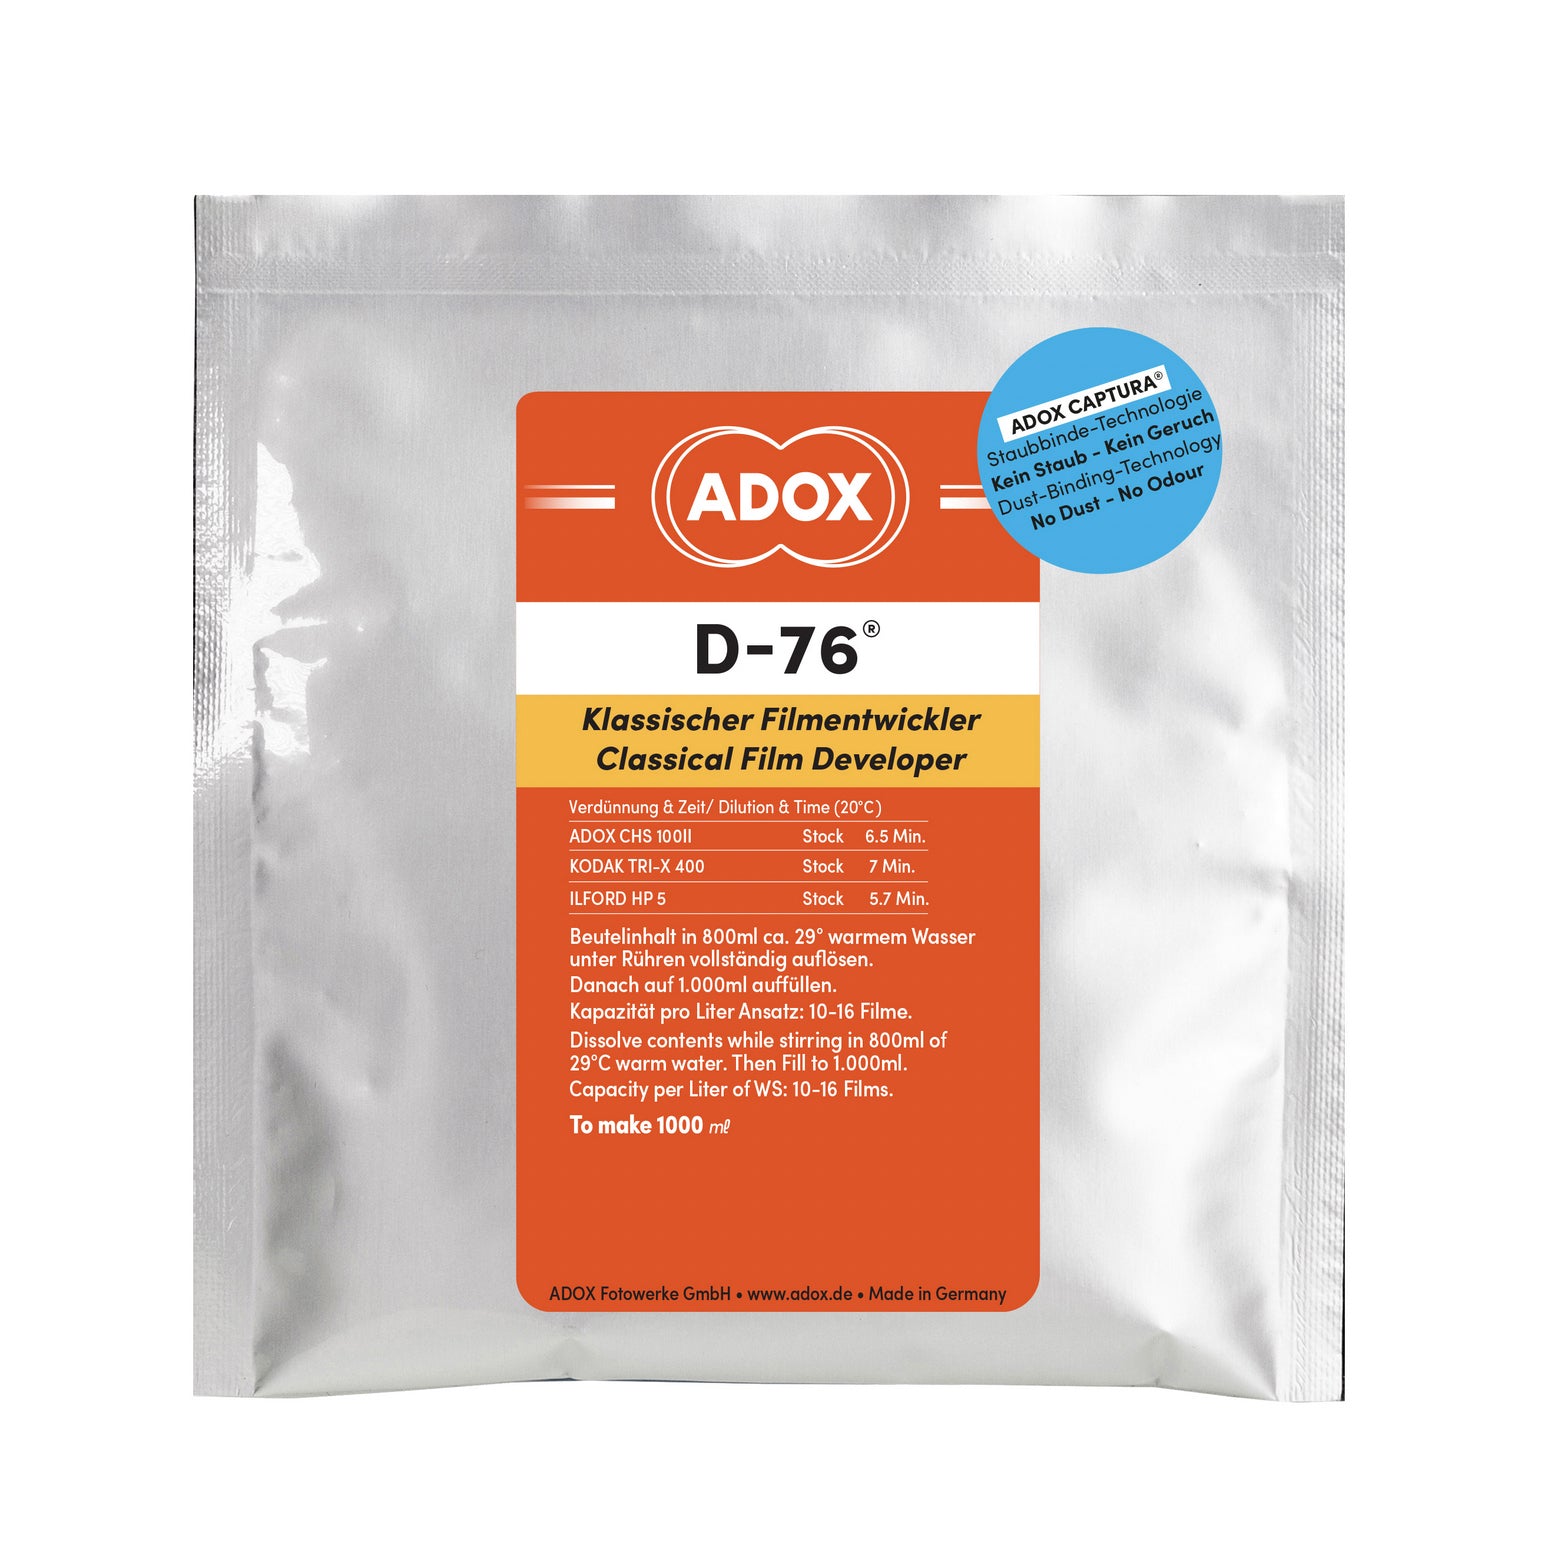 ADOX D-76 5 Liter